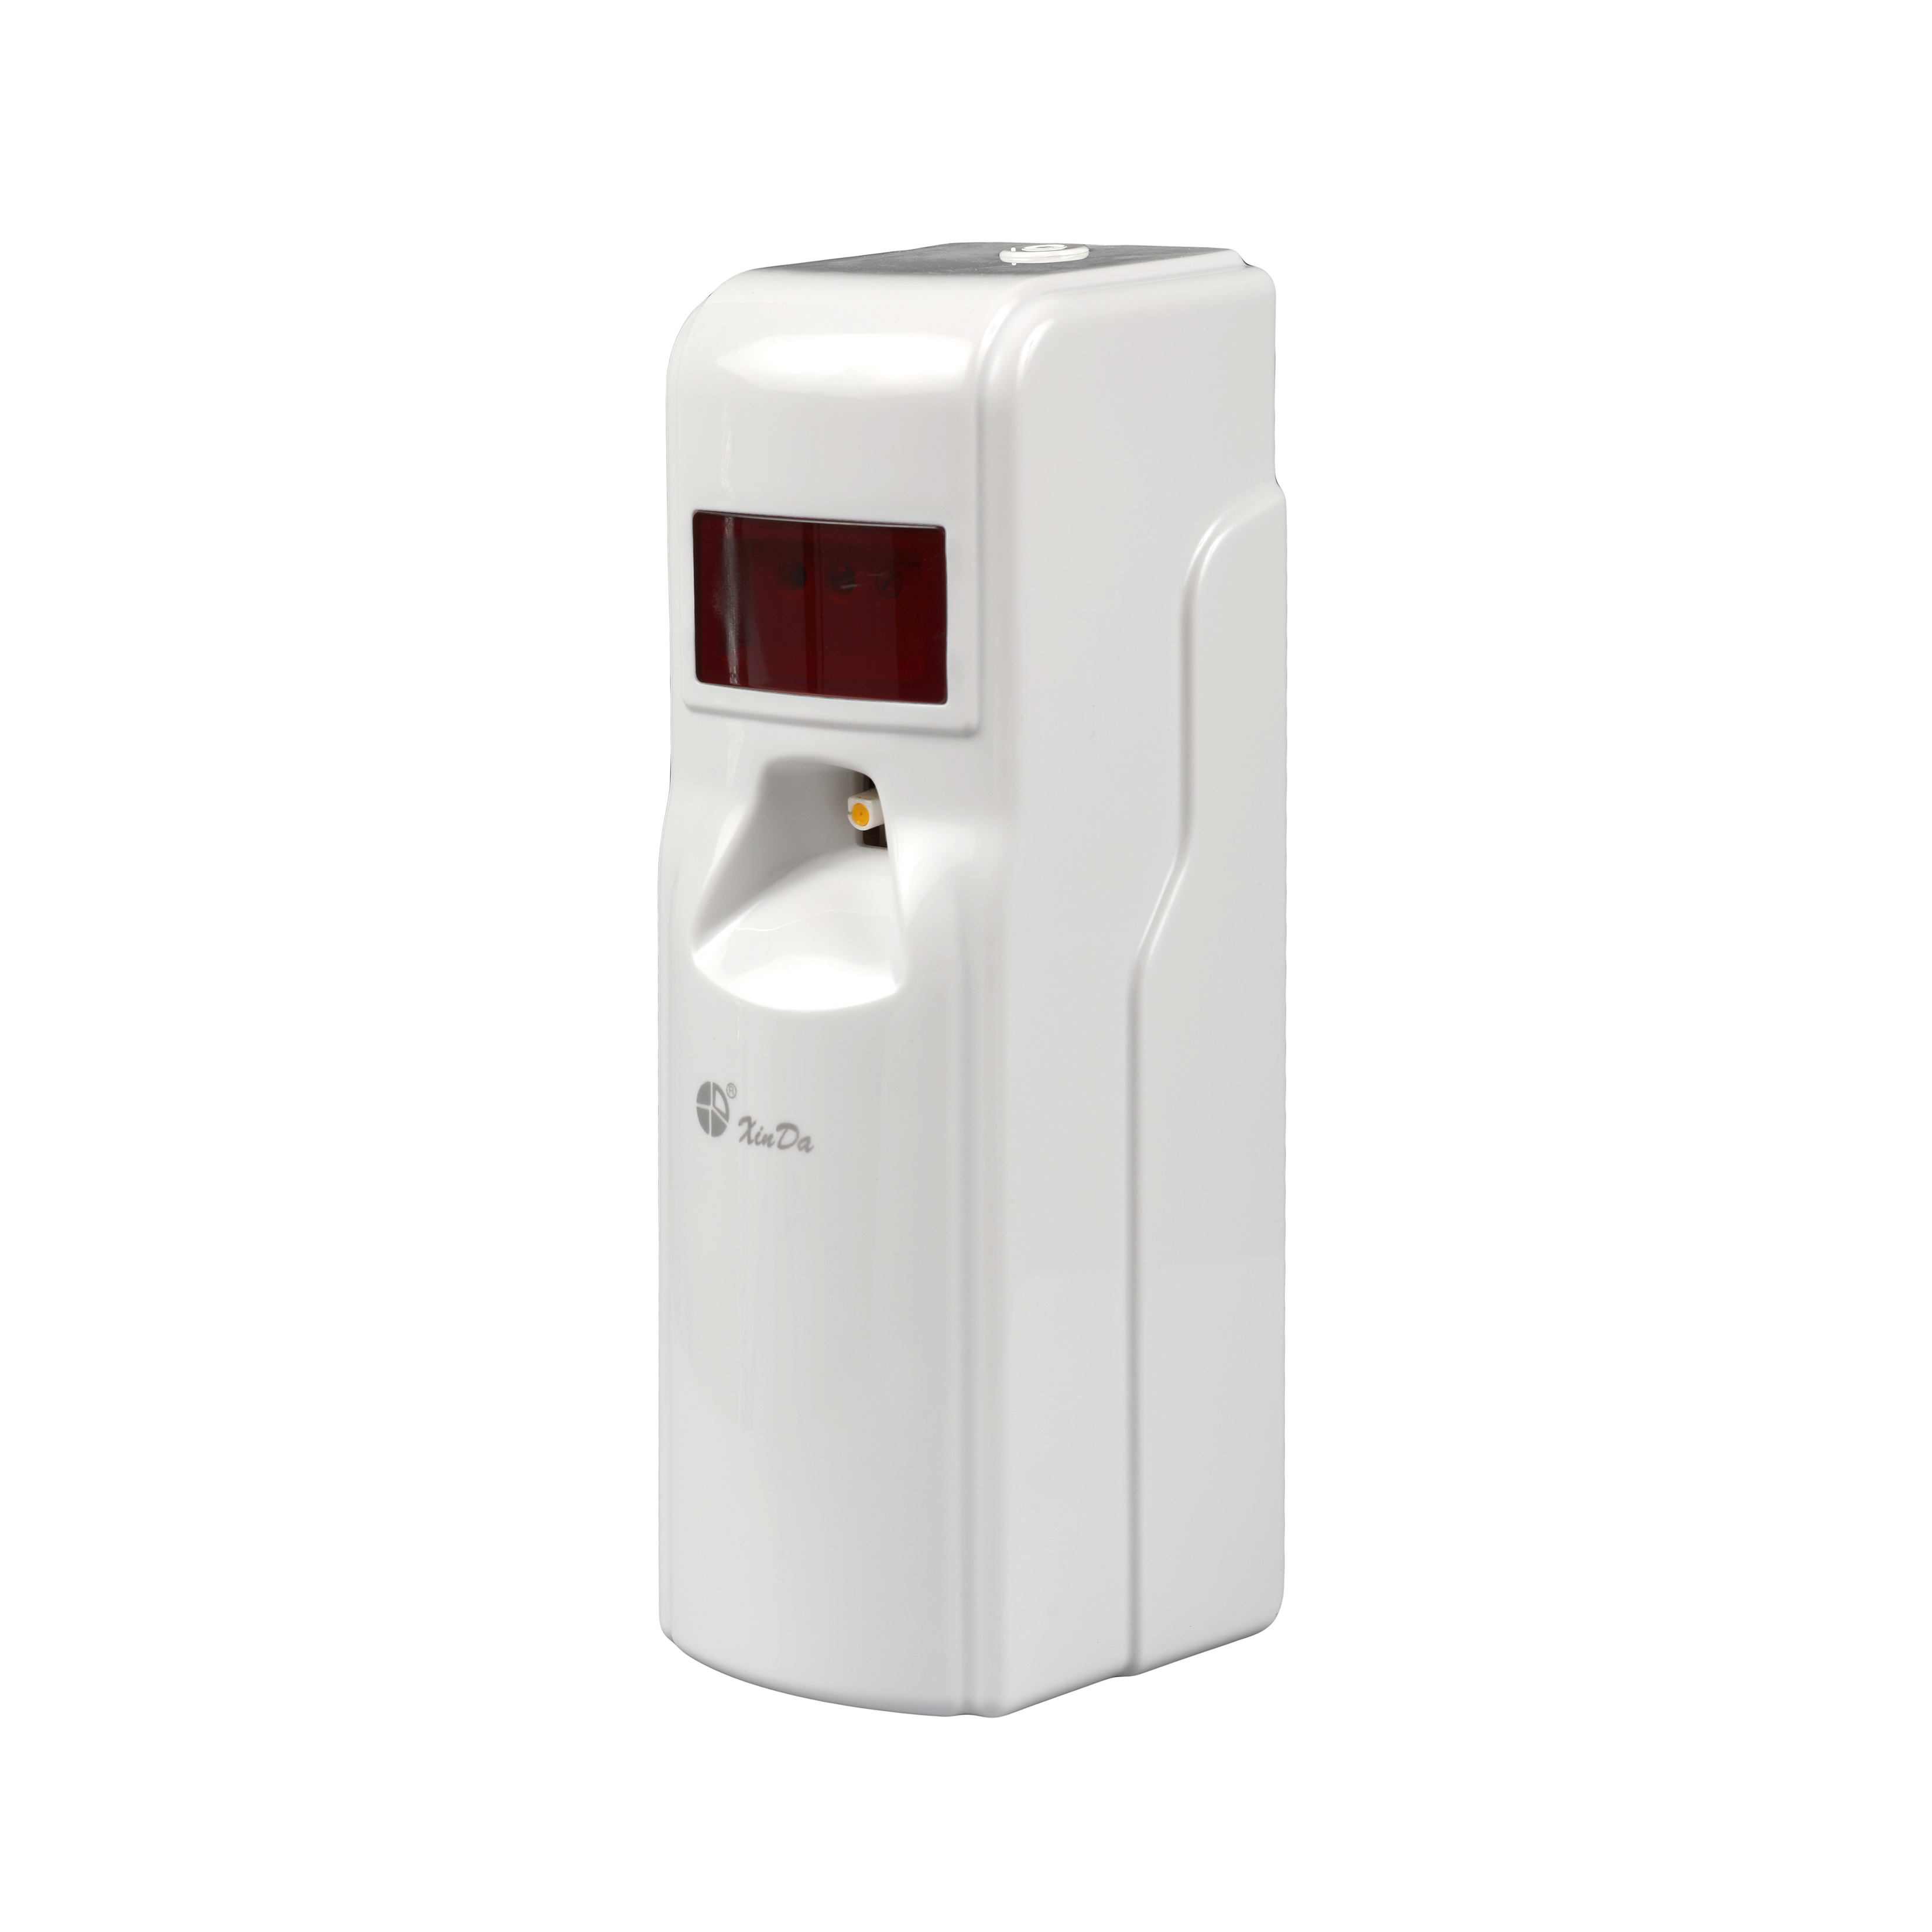 Xinda PXQ 388 Dispensador de aerosol de perfume automático Protección de bloqueo de llave Dispensador de perfume recargable eléctrico montado en la pared